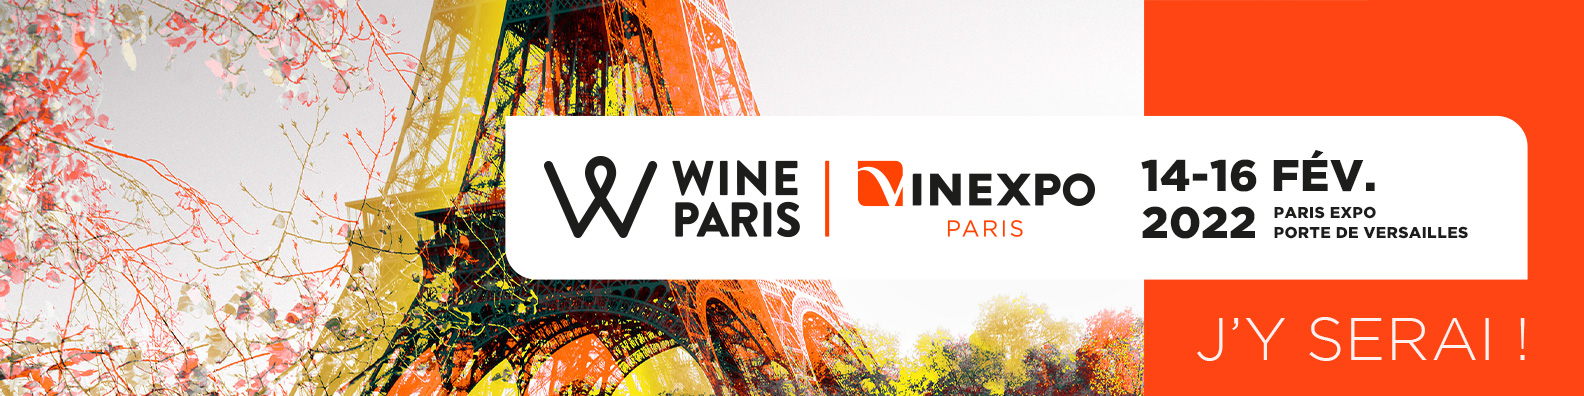 Wine Paris & Vinexpo Paris 2022